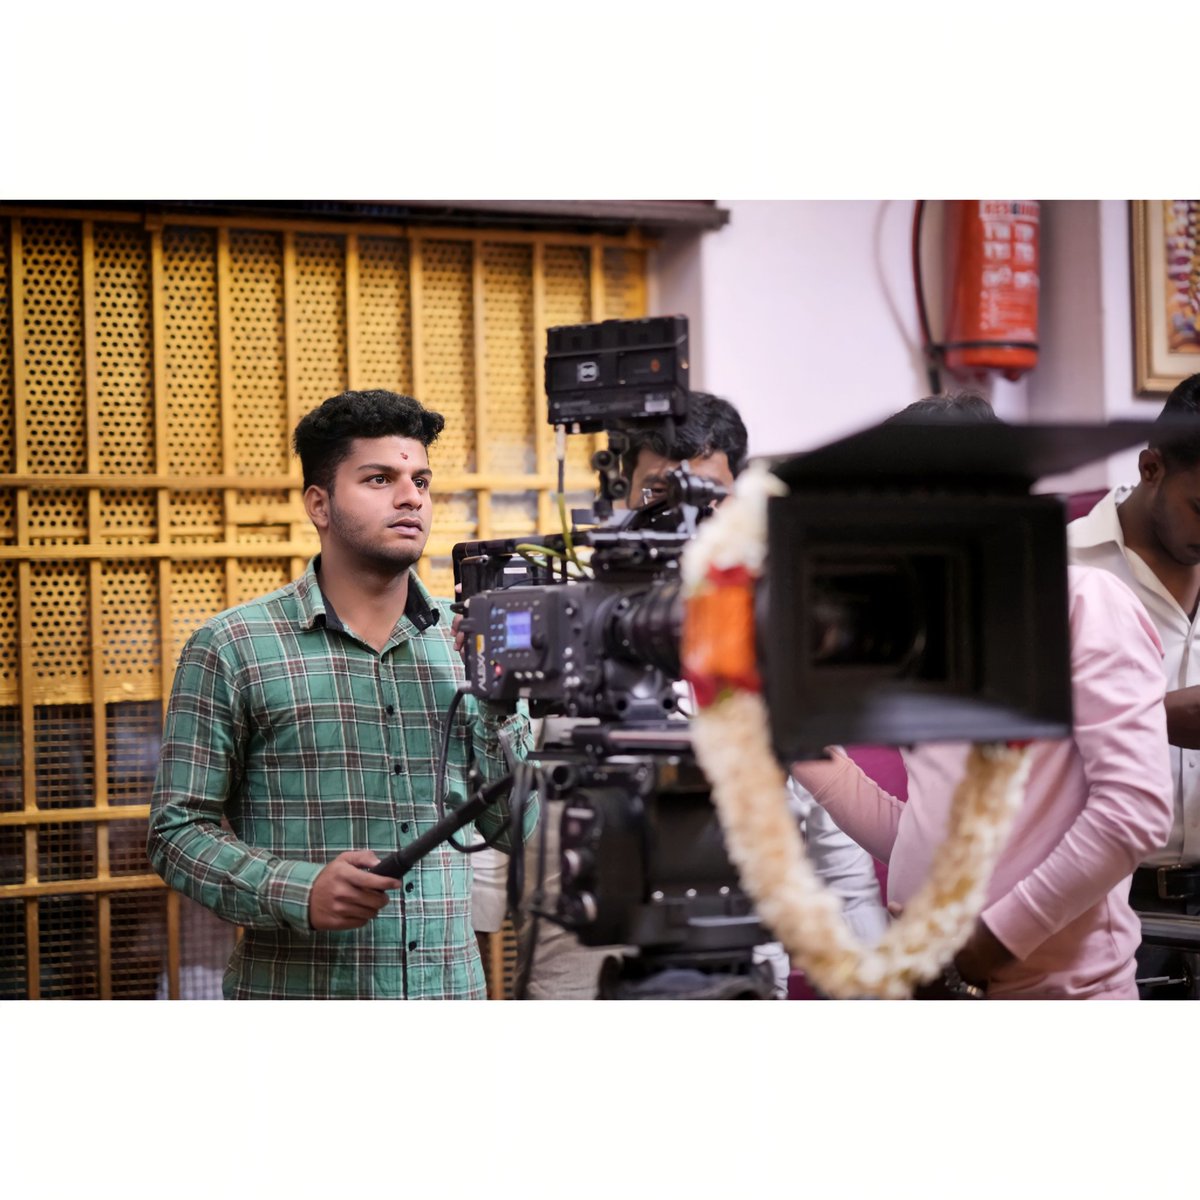 CINEMA AND ONLY CINEMA ❤️🎥✨️

#cinematography #cinema #cinemalife #cameralove #life #lifestyle #bengalurublogger #bengalurudiaries #chennai #vanakamchennai #gfti #gftimemories #filmmaker #movie